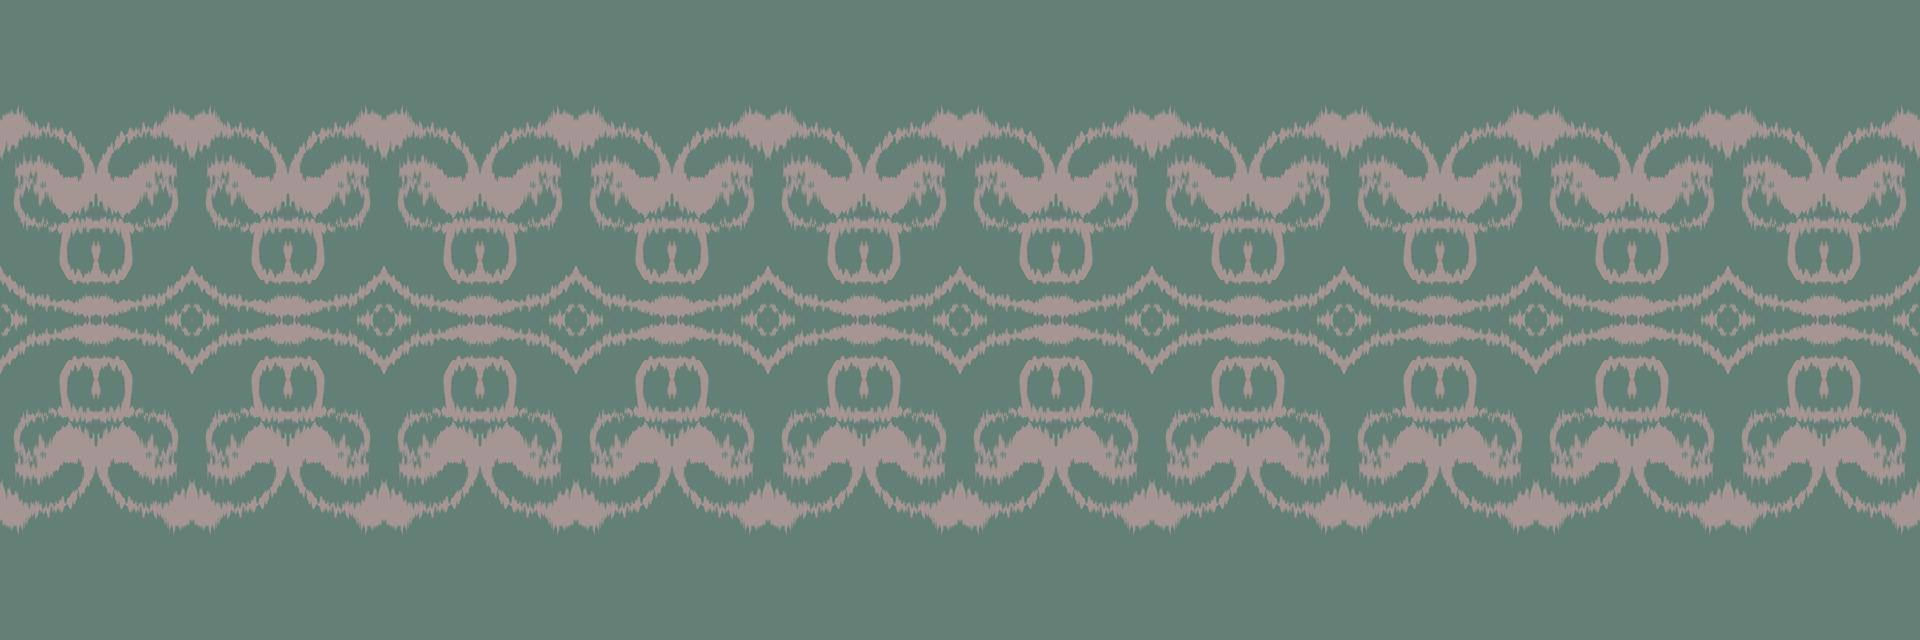 ikat kleding stof tribal aztec naadloos patroon. etnisch meetkundig batik ikkat digitaal vector textiel ontwerp voor prints kleding stof Saree mughal borstel symbool zwaden structuur kurti kurtis kurta's